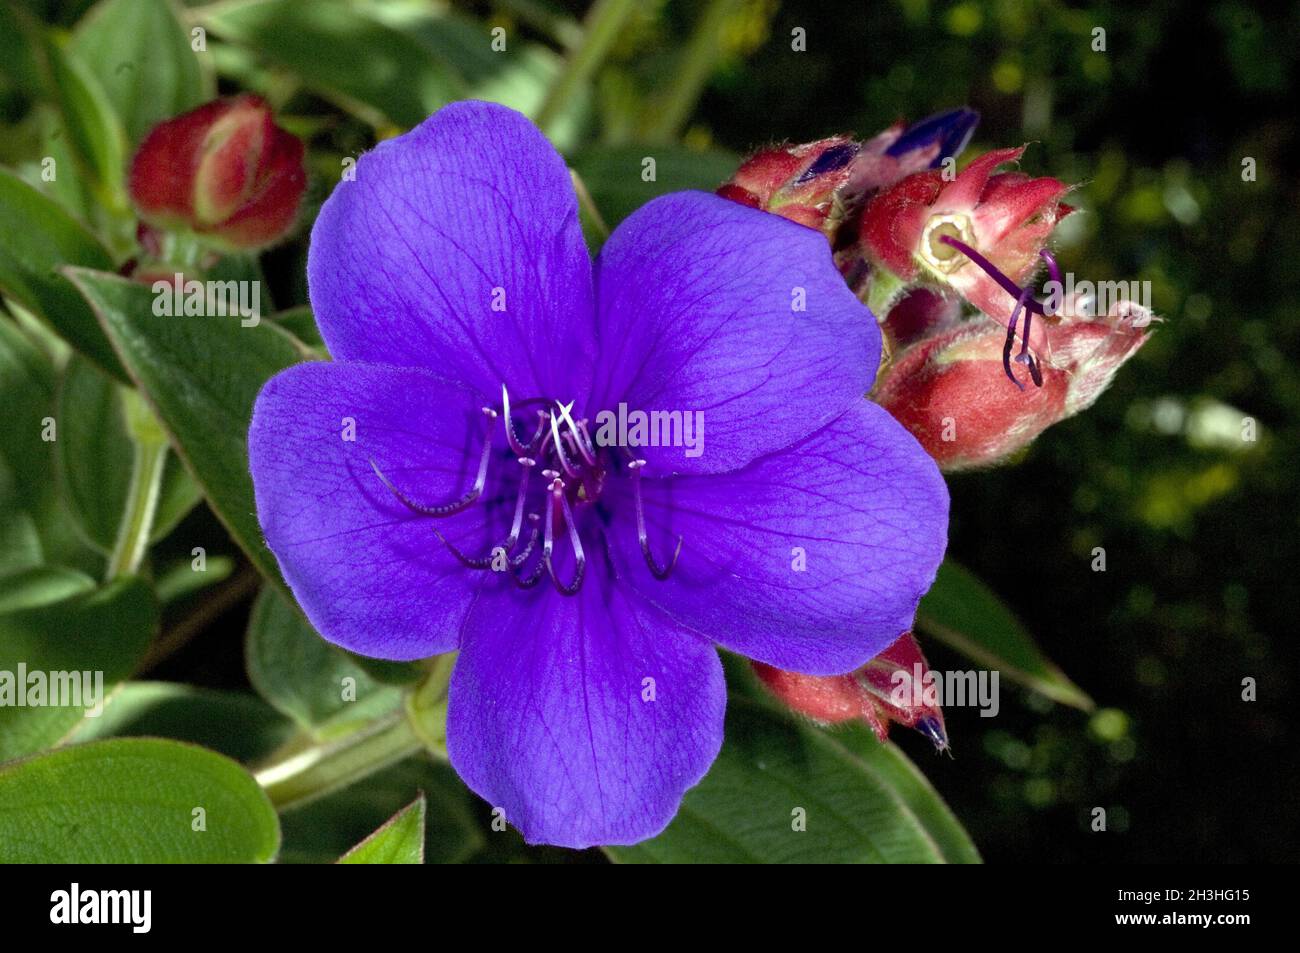 Tibouchina, princess flower, Tibouchina semidecandra Stock Photo